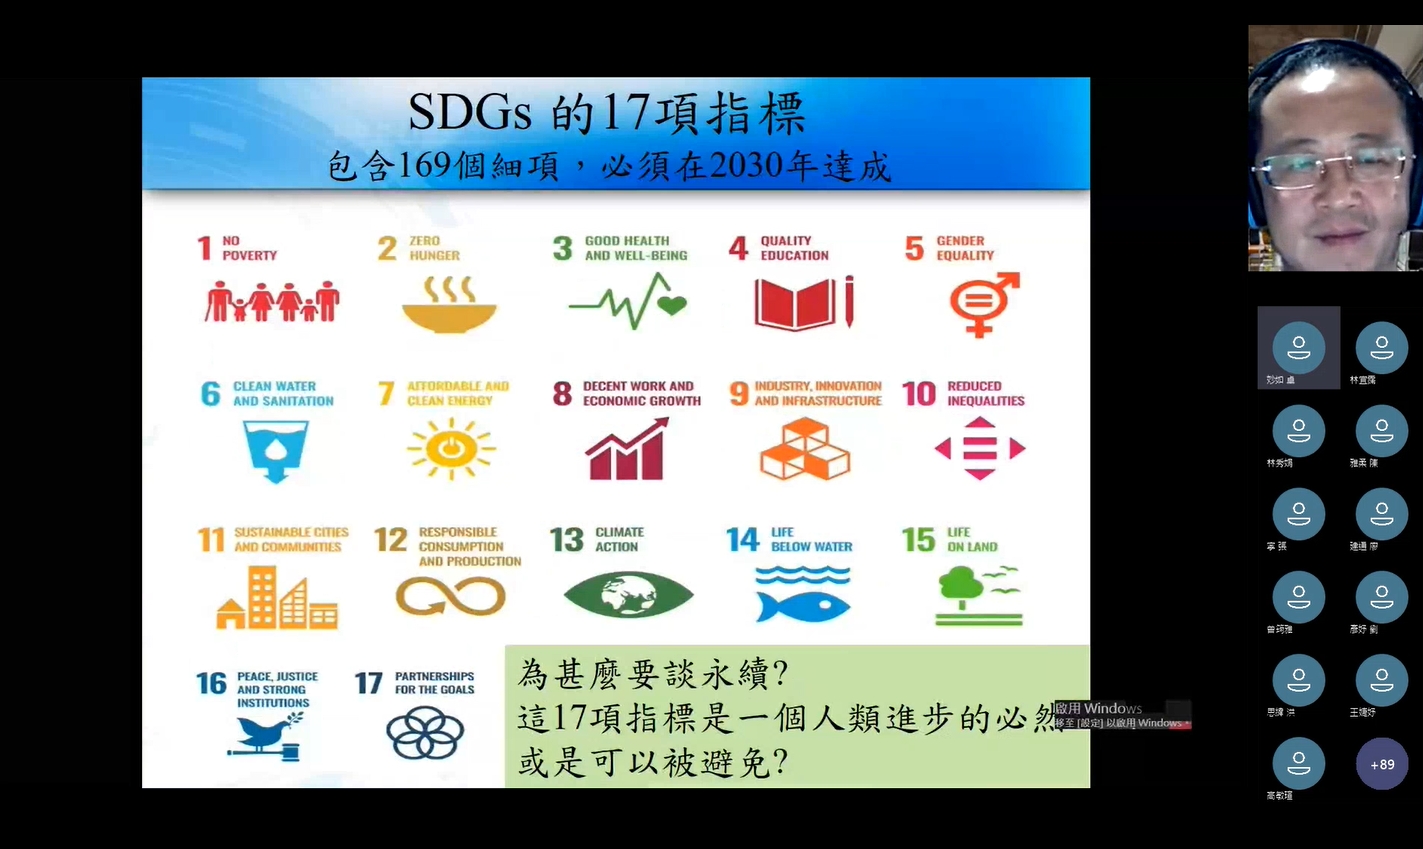 講師黃愷平主任為大家解說SDGs指標